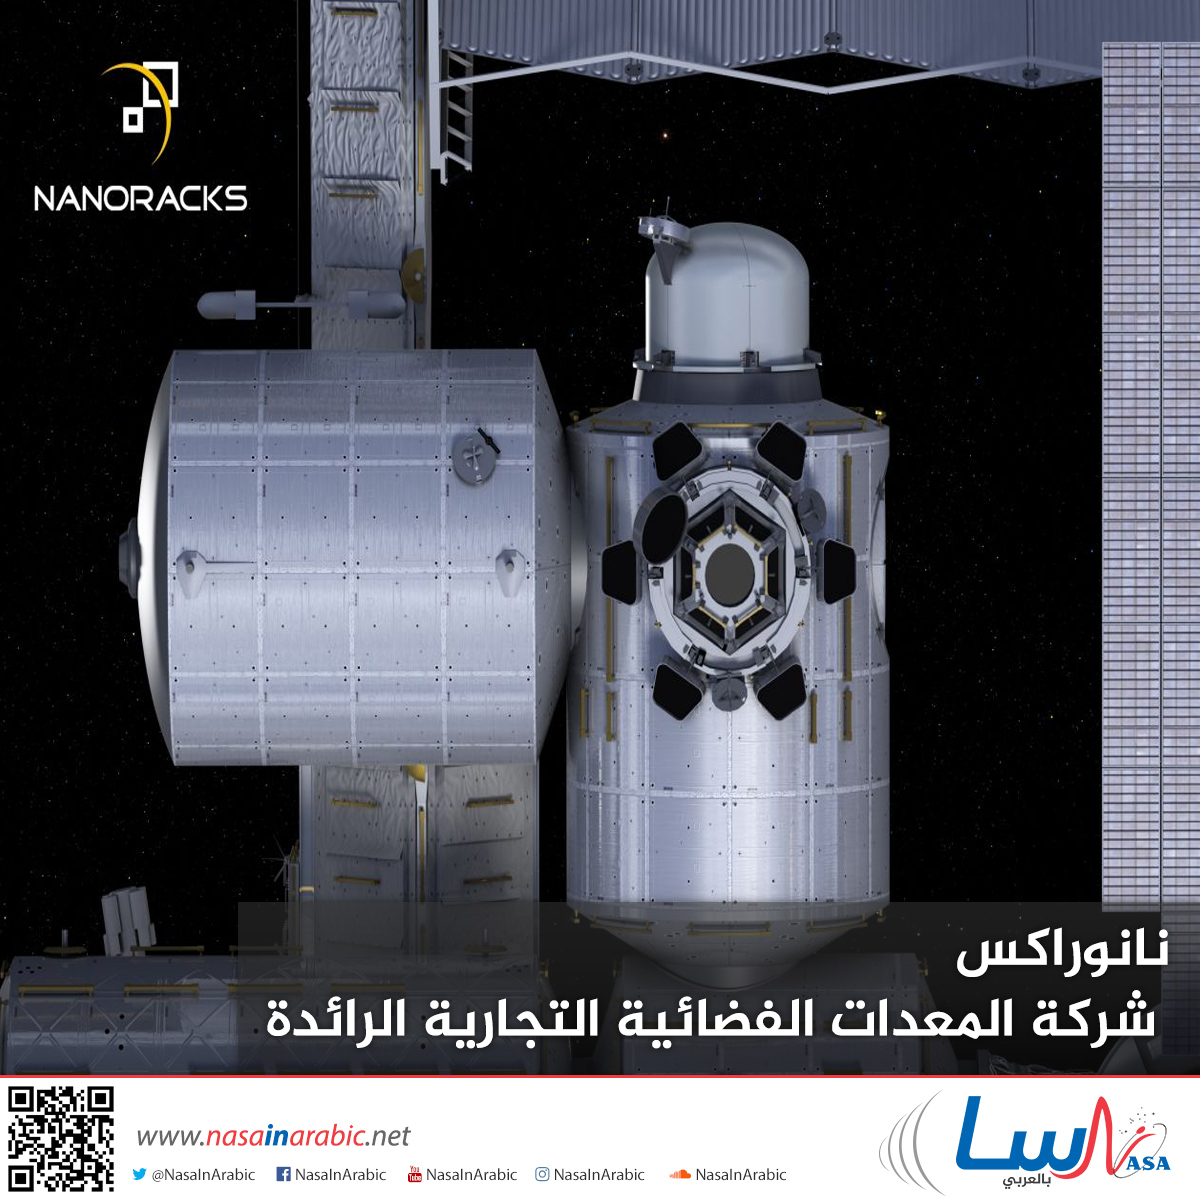 نانوراكس شركة المعدات الفضائية التجارية الرائدة